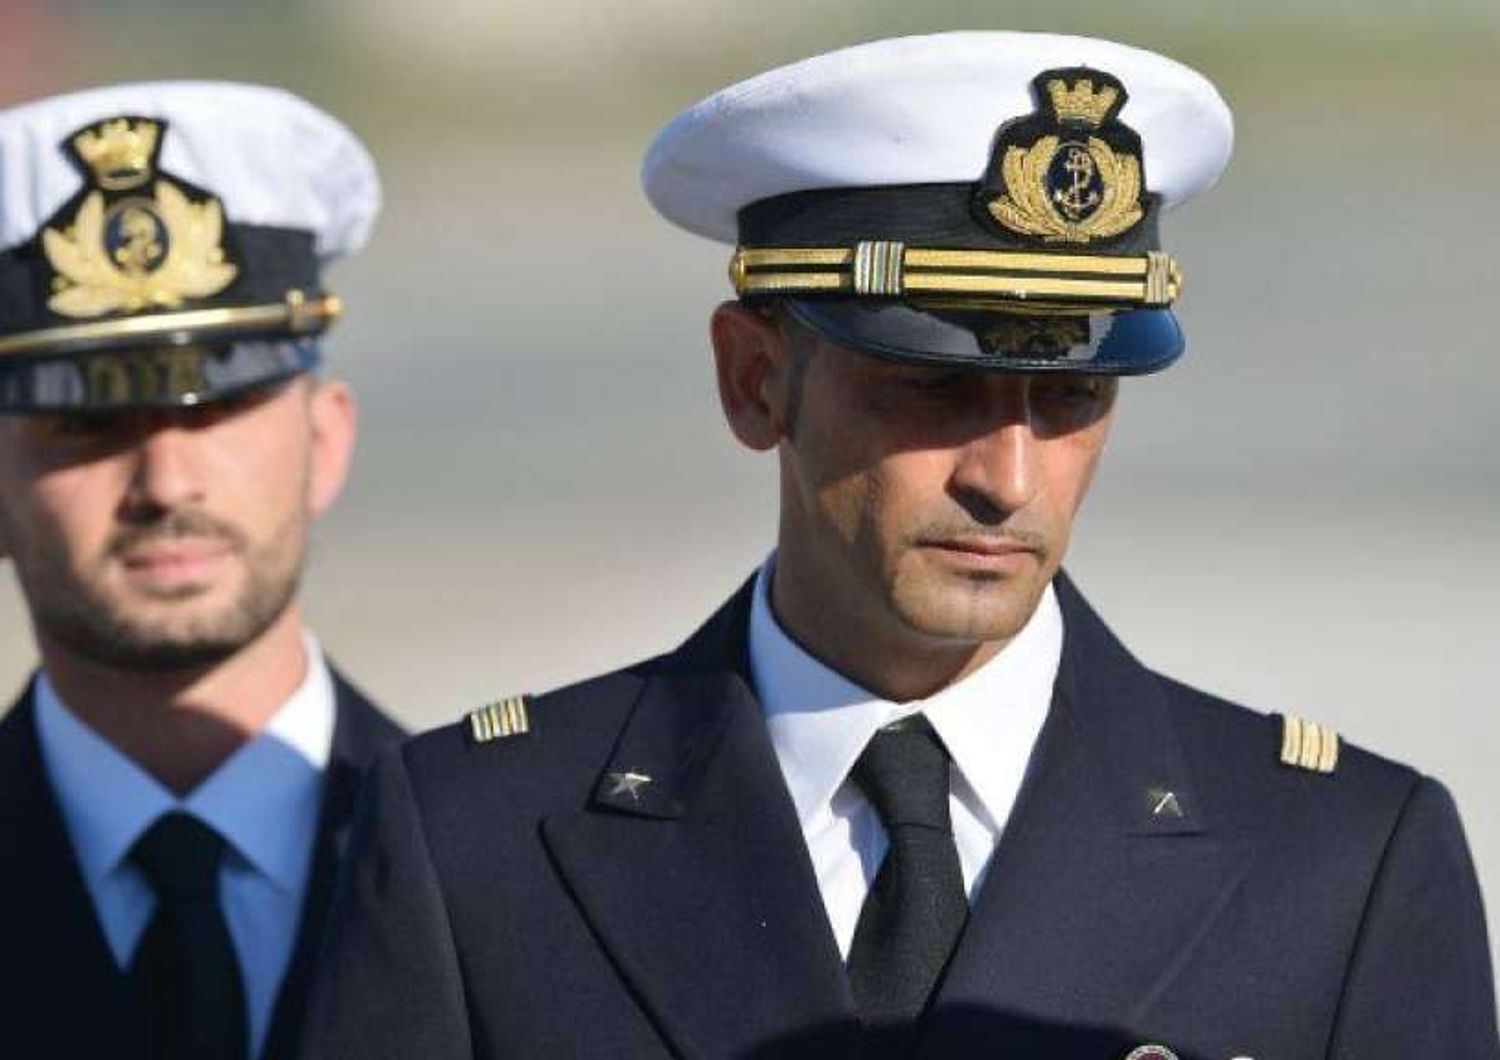 Maro': Girone chiede di rientrare in Italia, Latorre di prolungare soggiorno